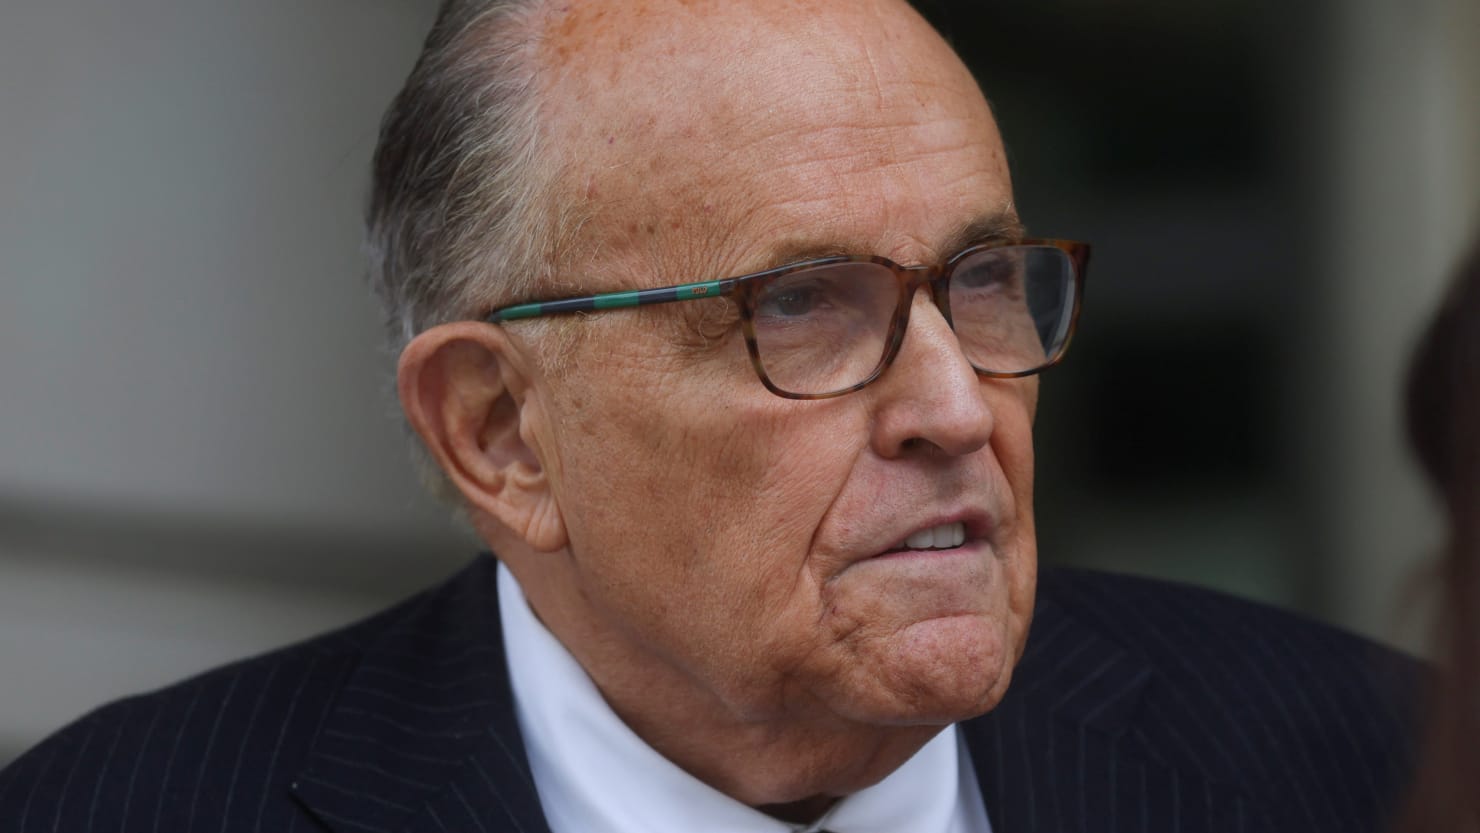 Rudy Giuliani et le procès de diffamation : le spectacle quotidien de son dernier problème juridique coûteux